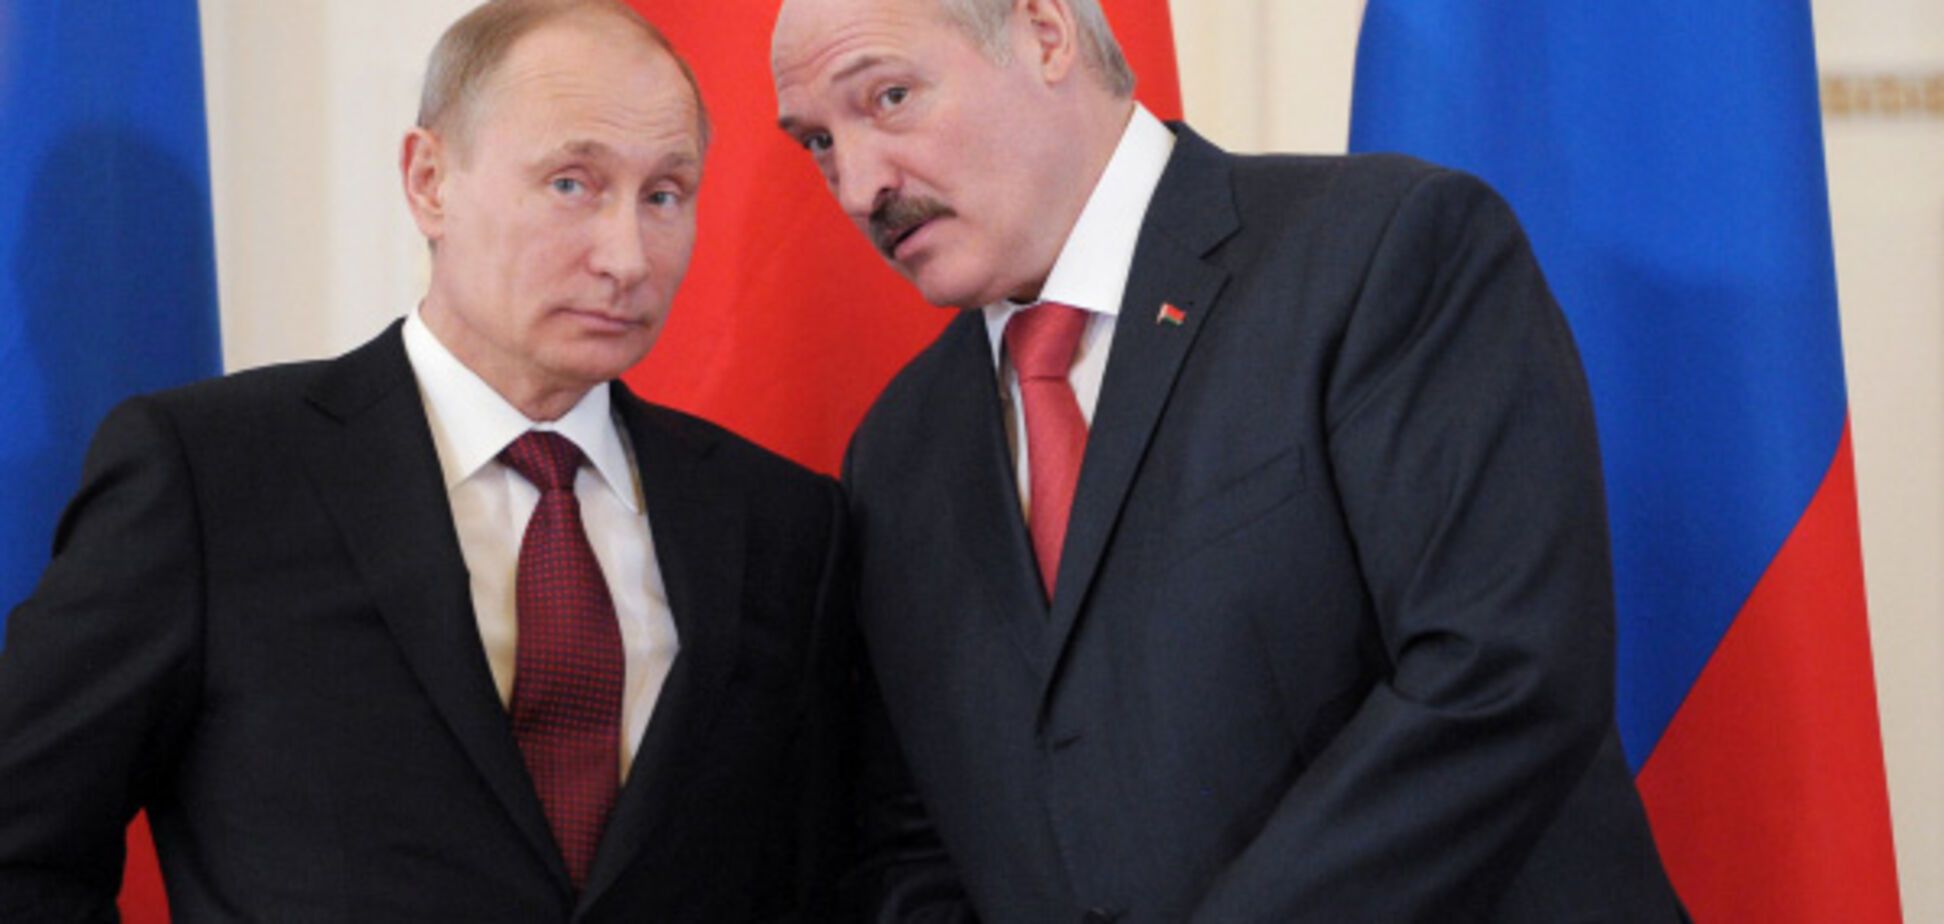 Білорусь стала ударною силою в авантюрних проектах Кремля